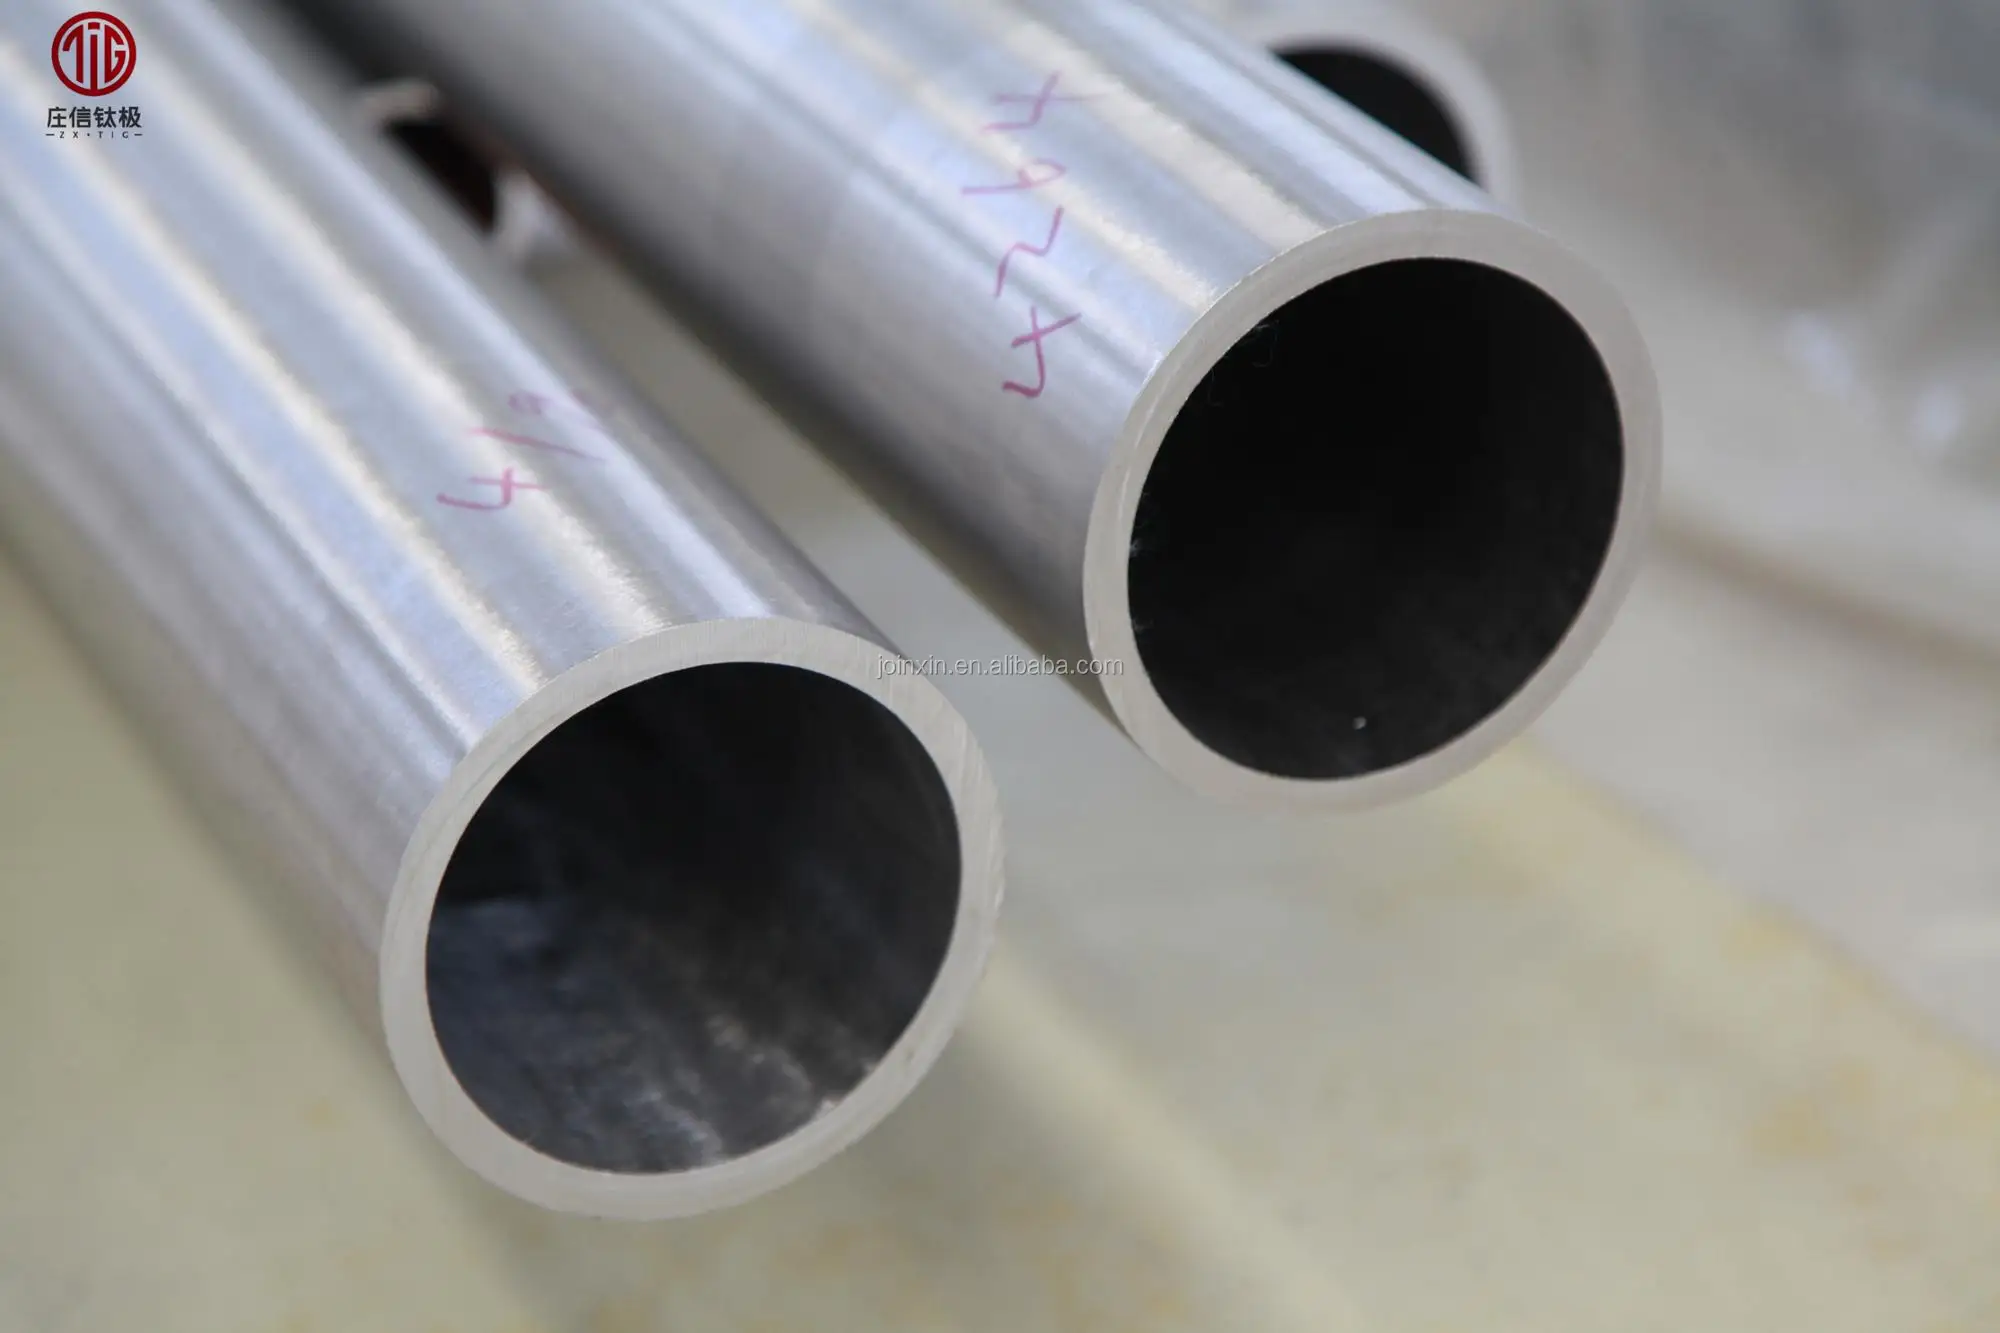 titanium exhaust pipe